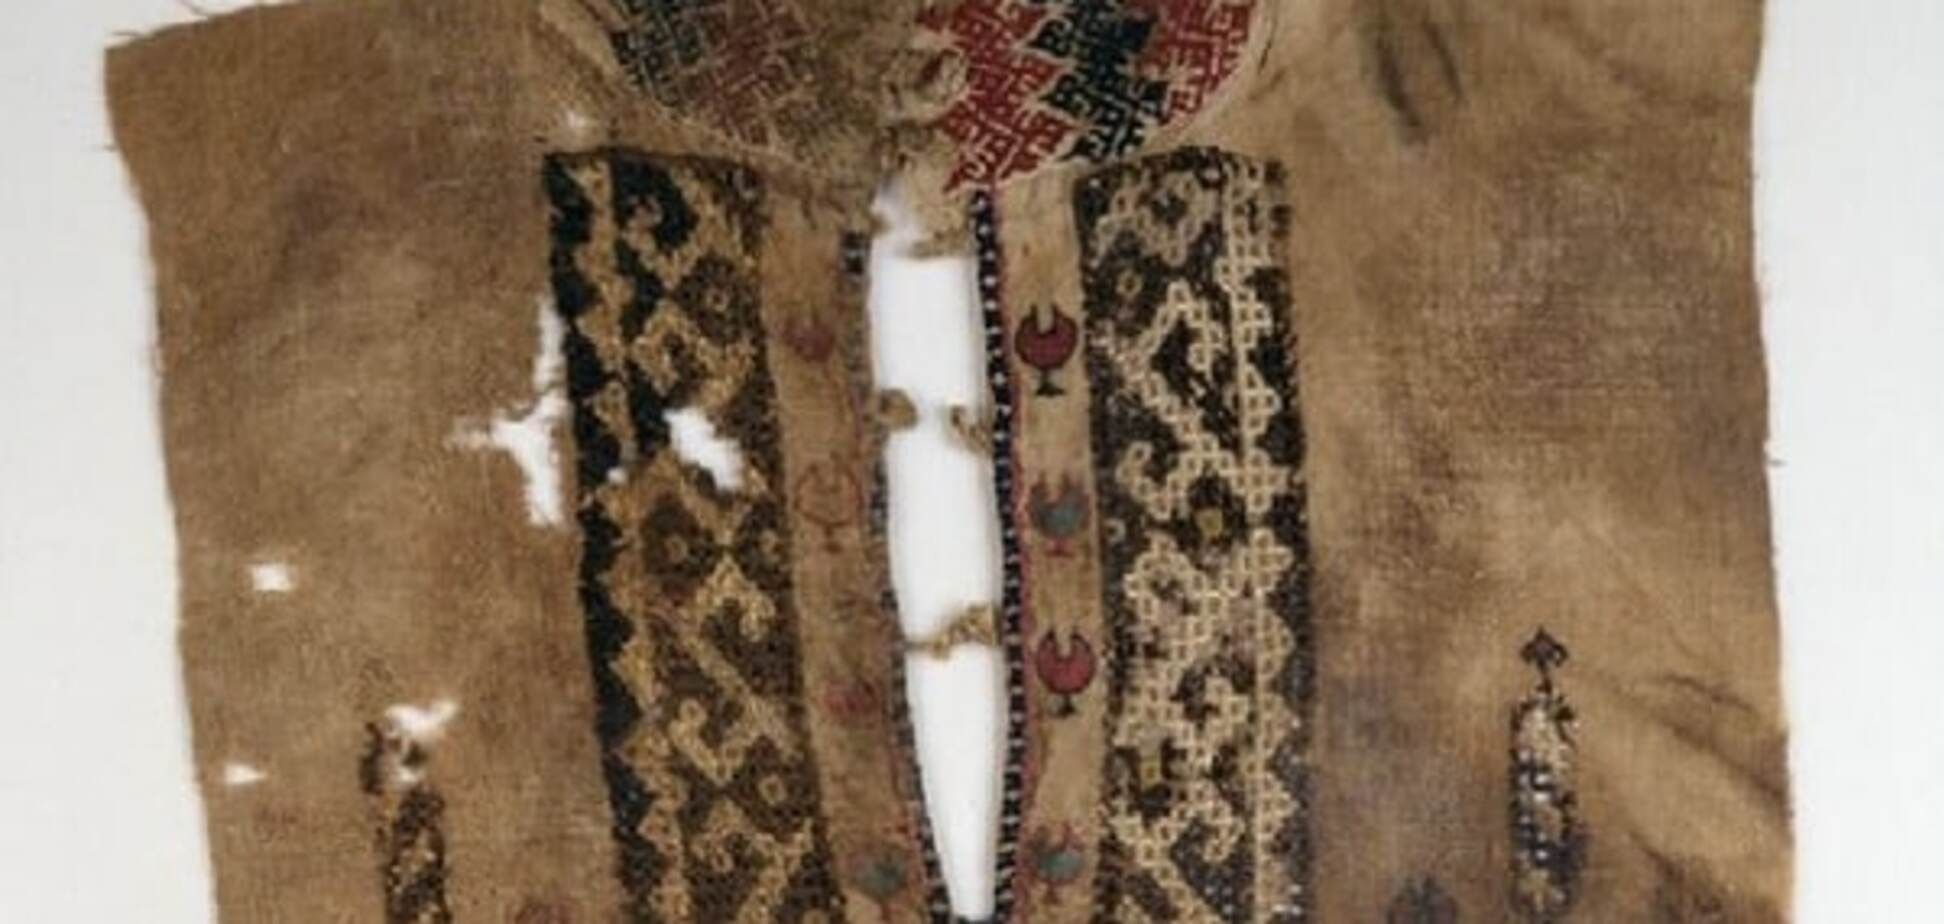 Єгипетська вишиванка з типово праукраїнськими символами і орнаментами